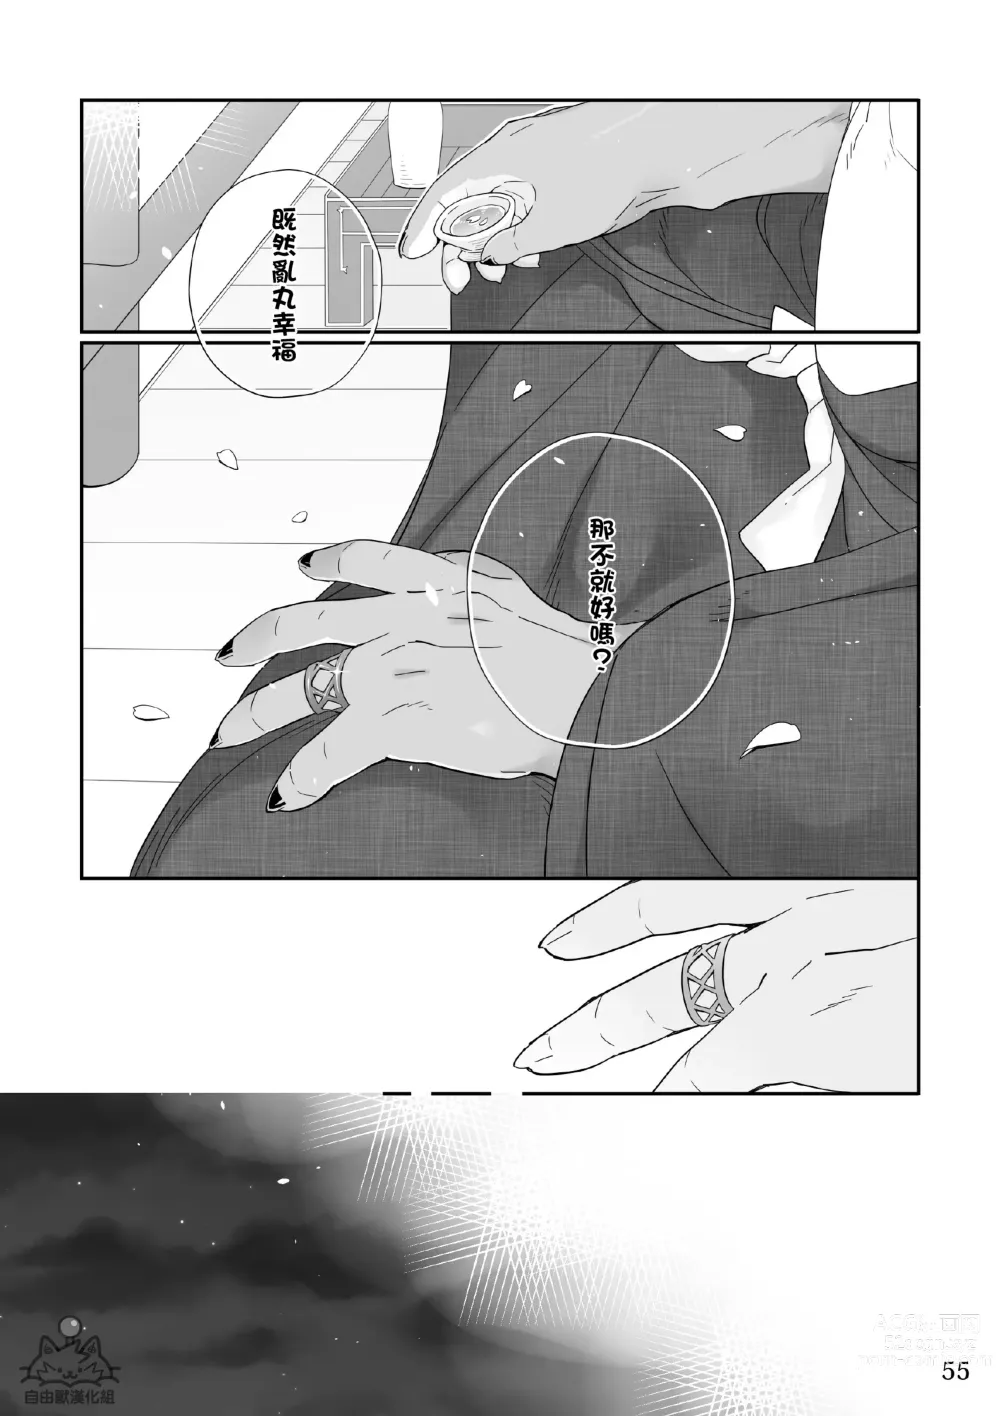 Page 54 of doujinshi Utopia